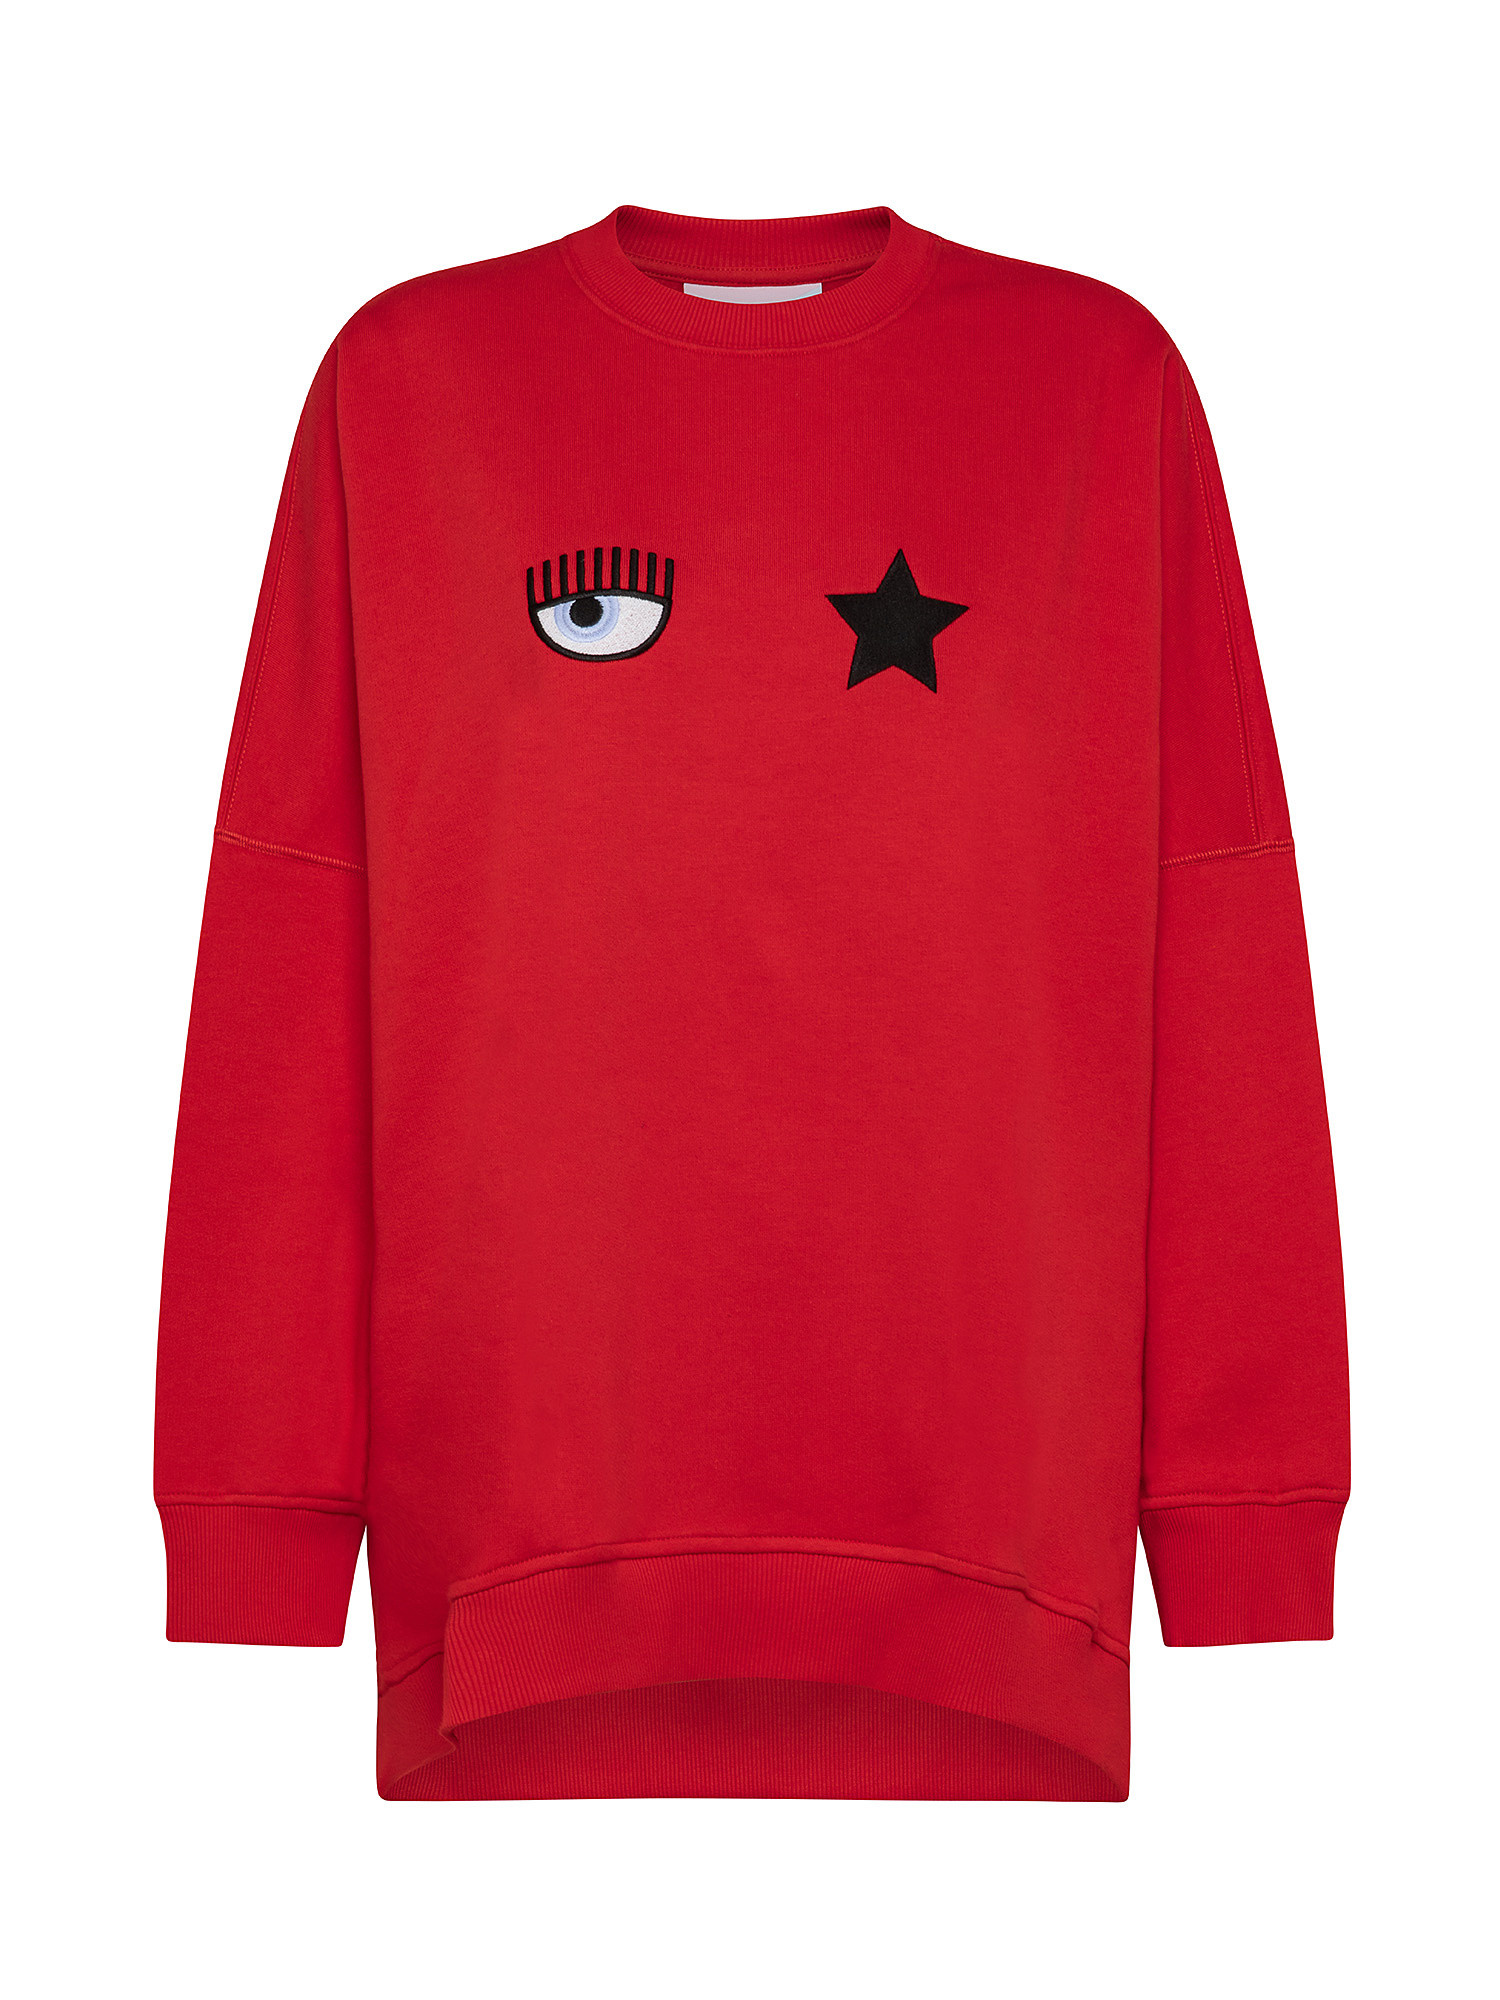 Eye Star sweatshirt, Red, large image number 0